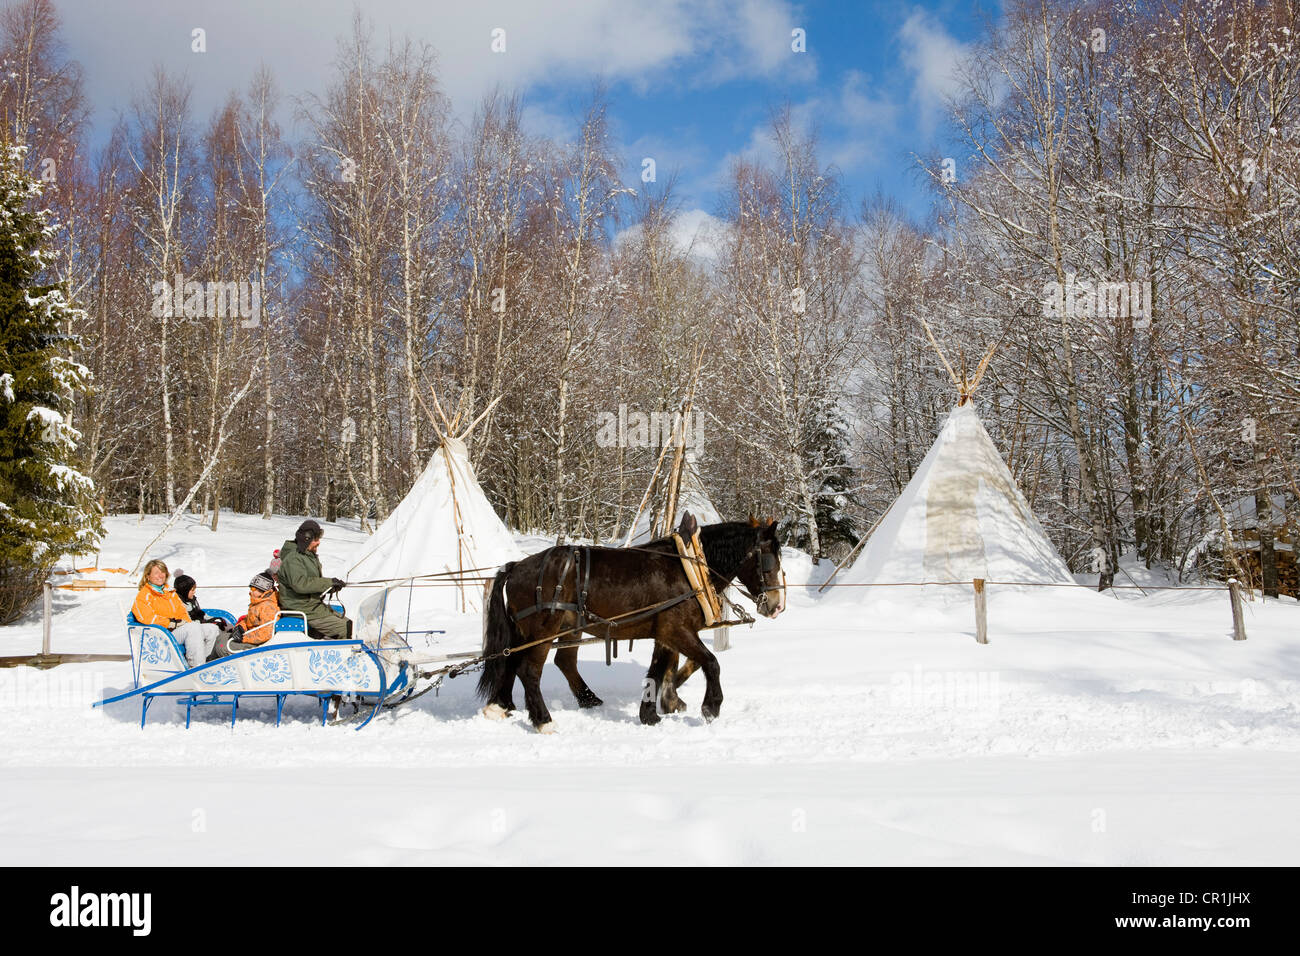 France, Savoie, la Feclaz, massif des Bauges, sleigh trip Stock Photo